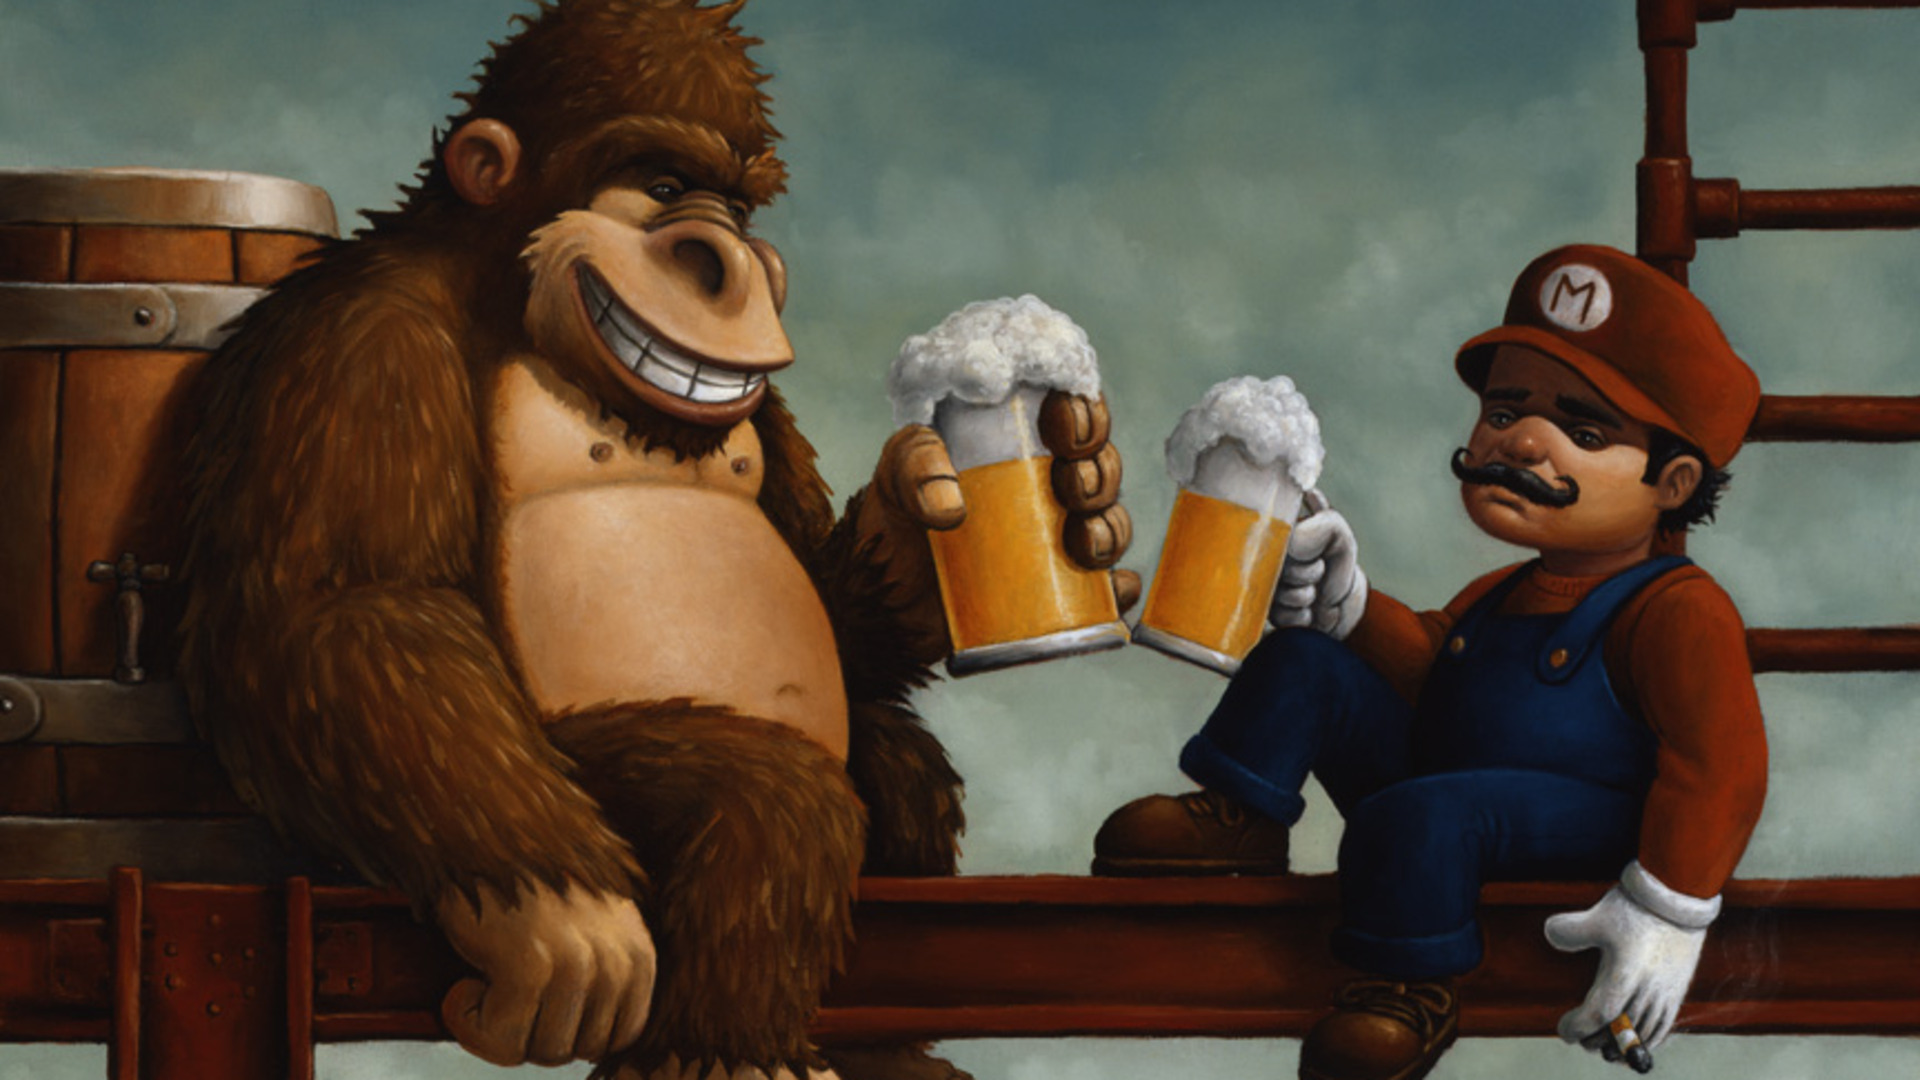 Beer Alcohol Mario Donkey Kong wallpaper 1920x1080 64094